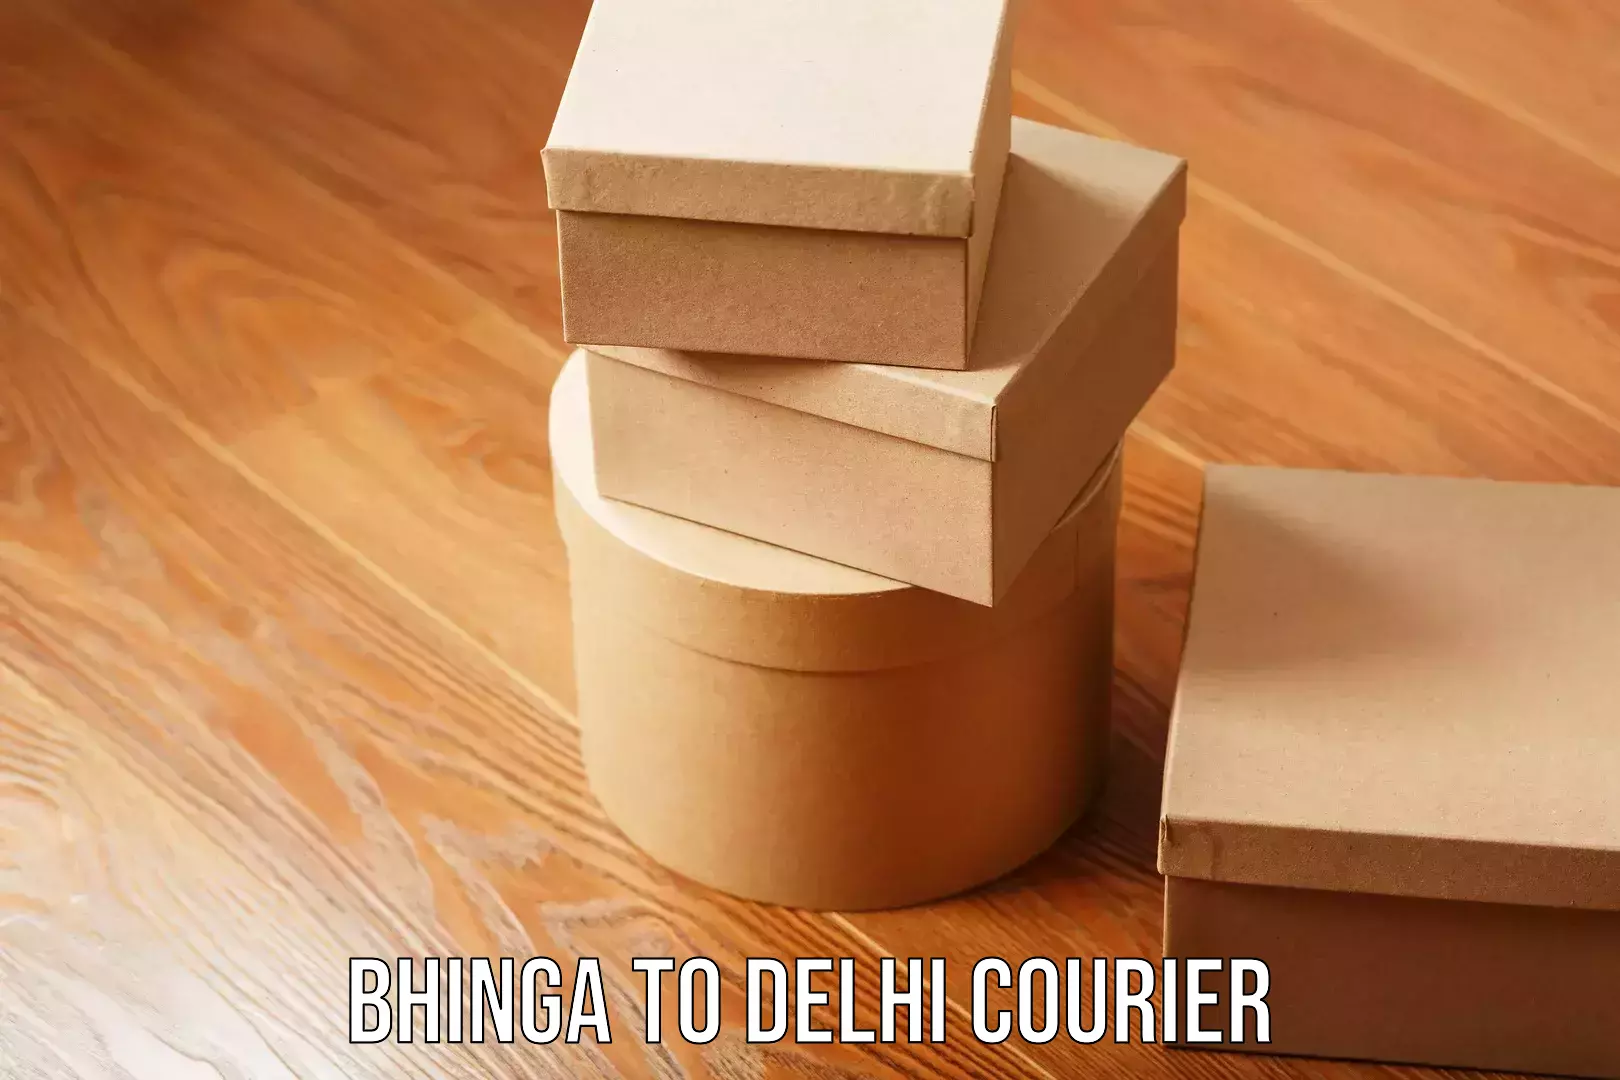 Next-day freight services Bhinga to Delhi